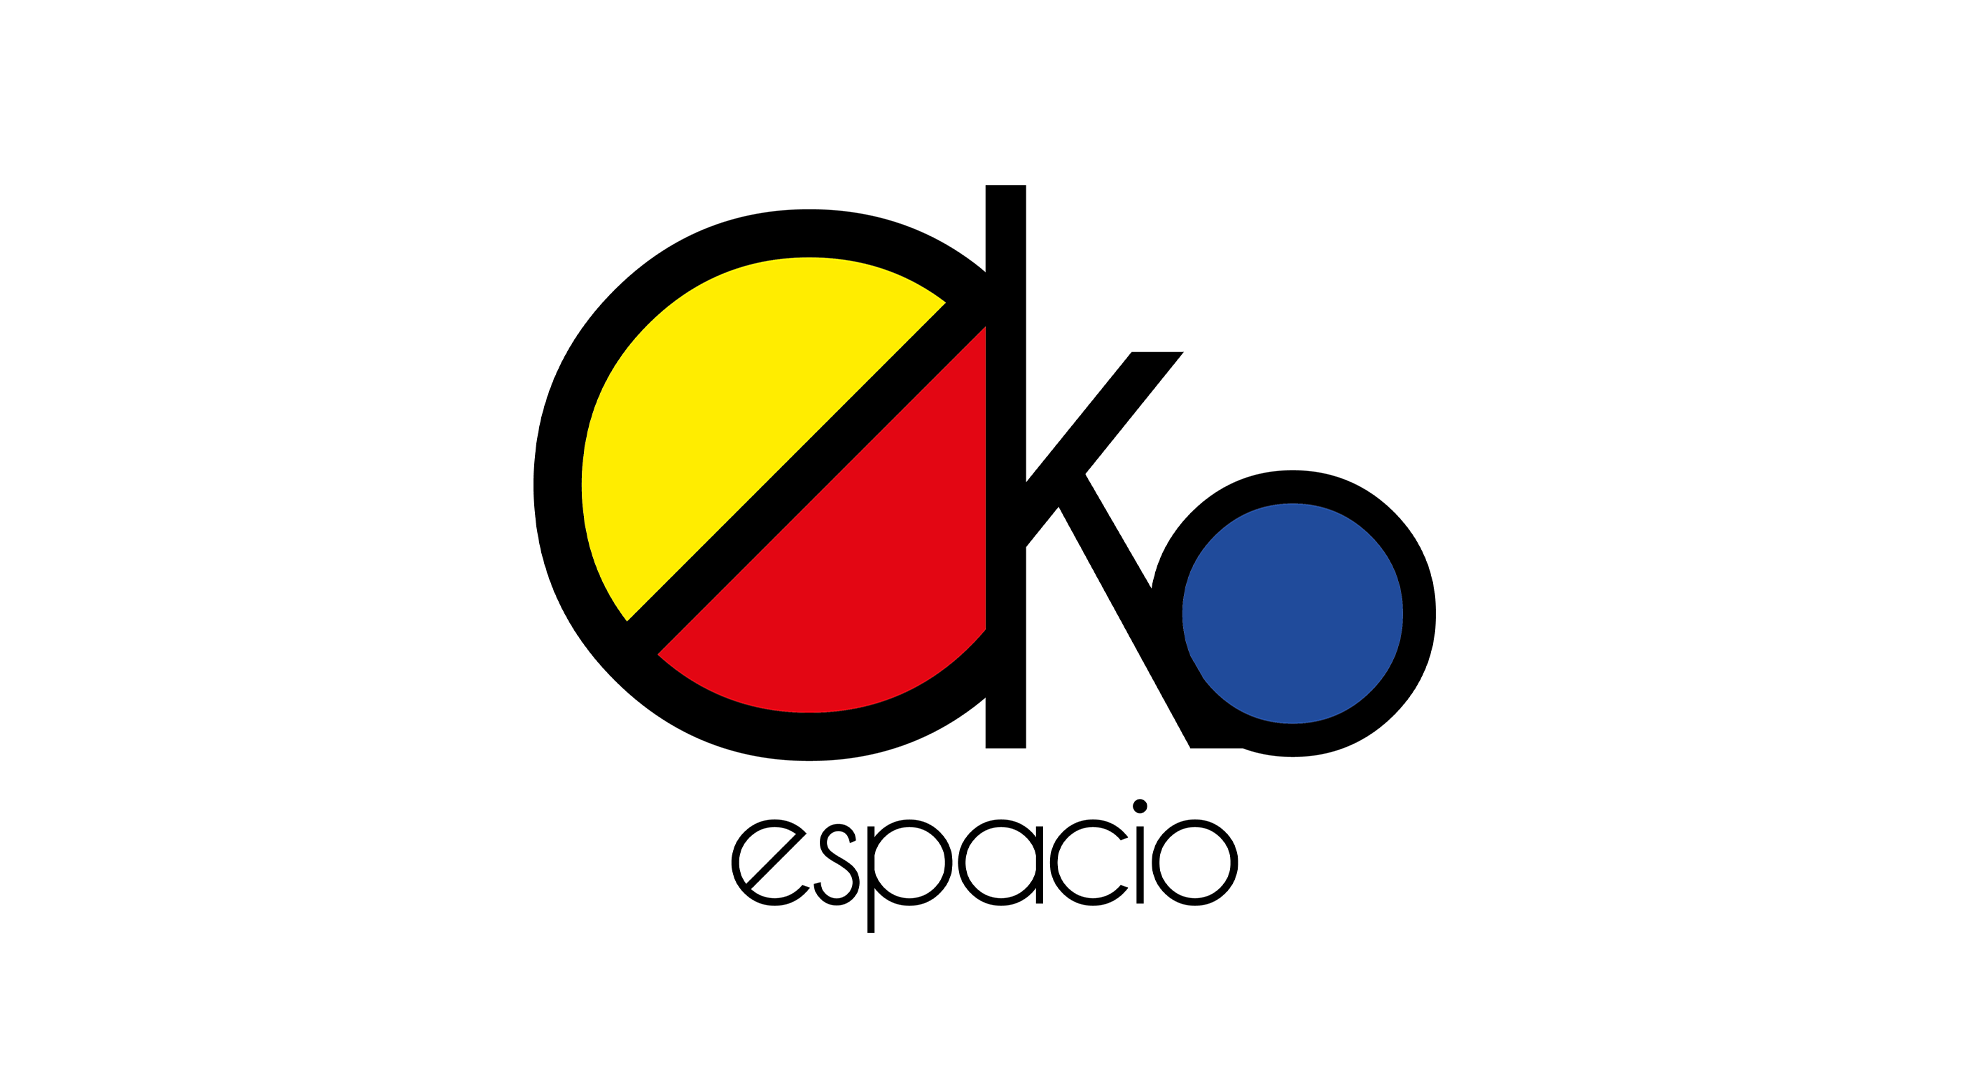 Eko Espacio - Diseño espacial - Identidad Visual